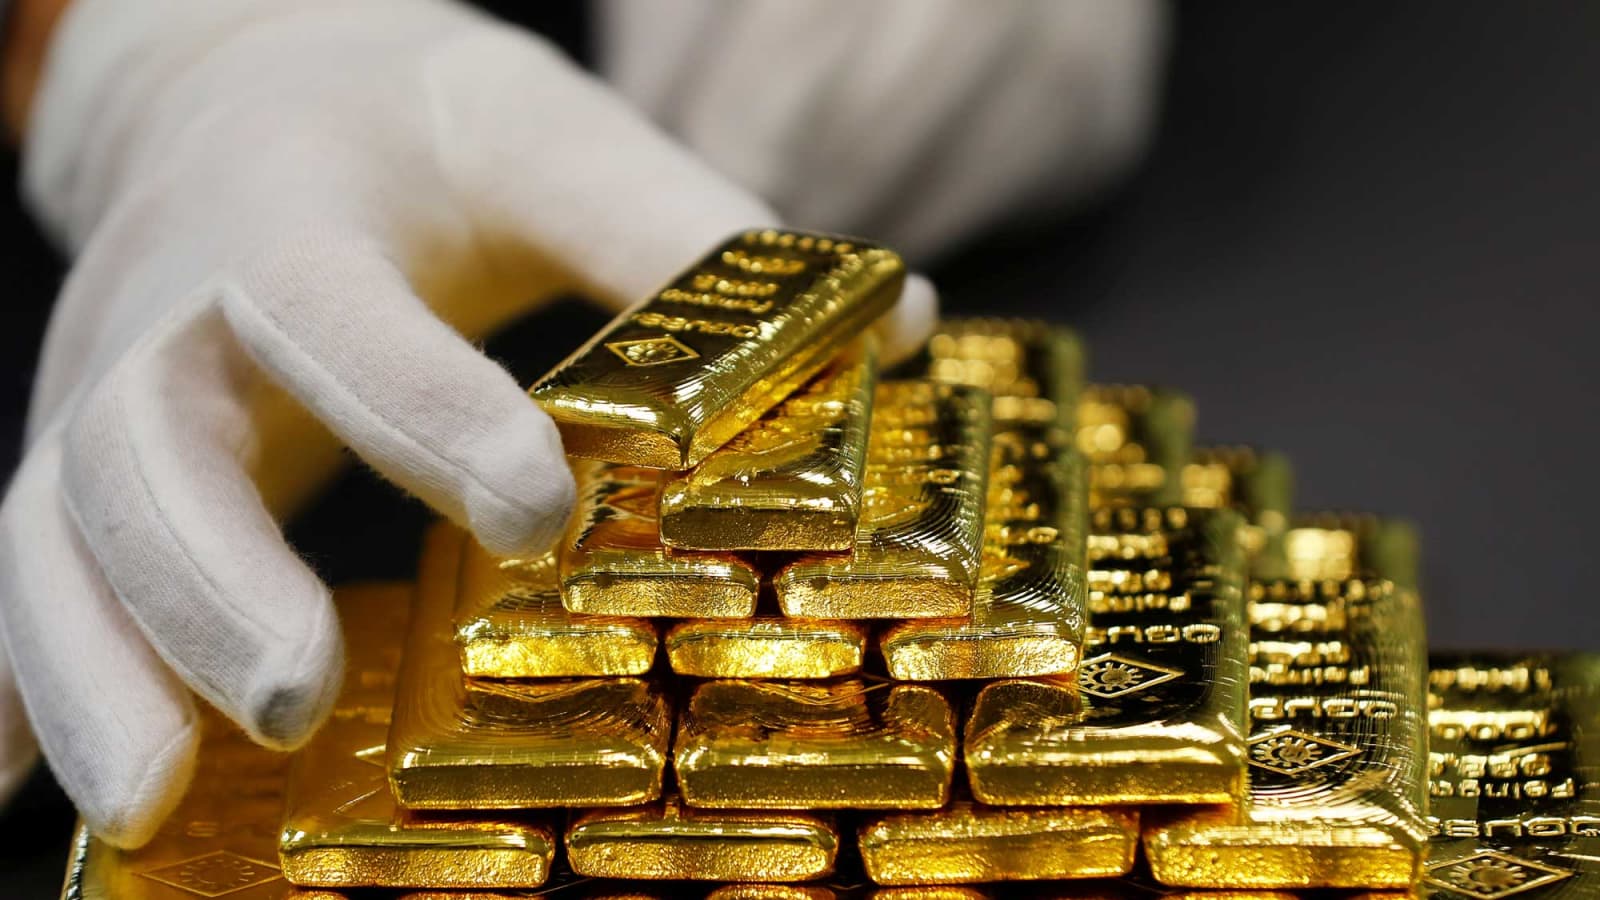 قیمت طلا امروز چند است؟ (سه شنبه 26 مرداد 1400)